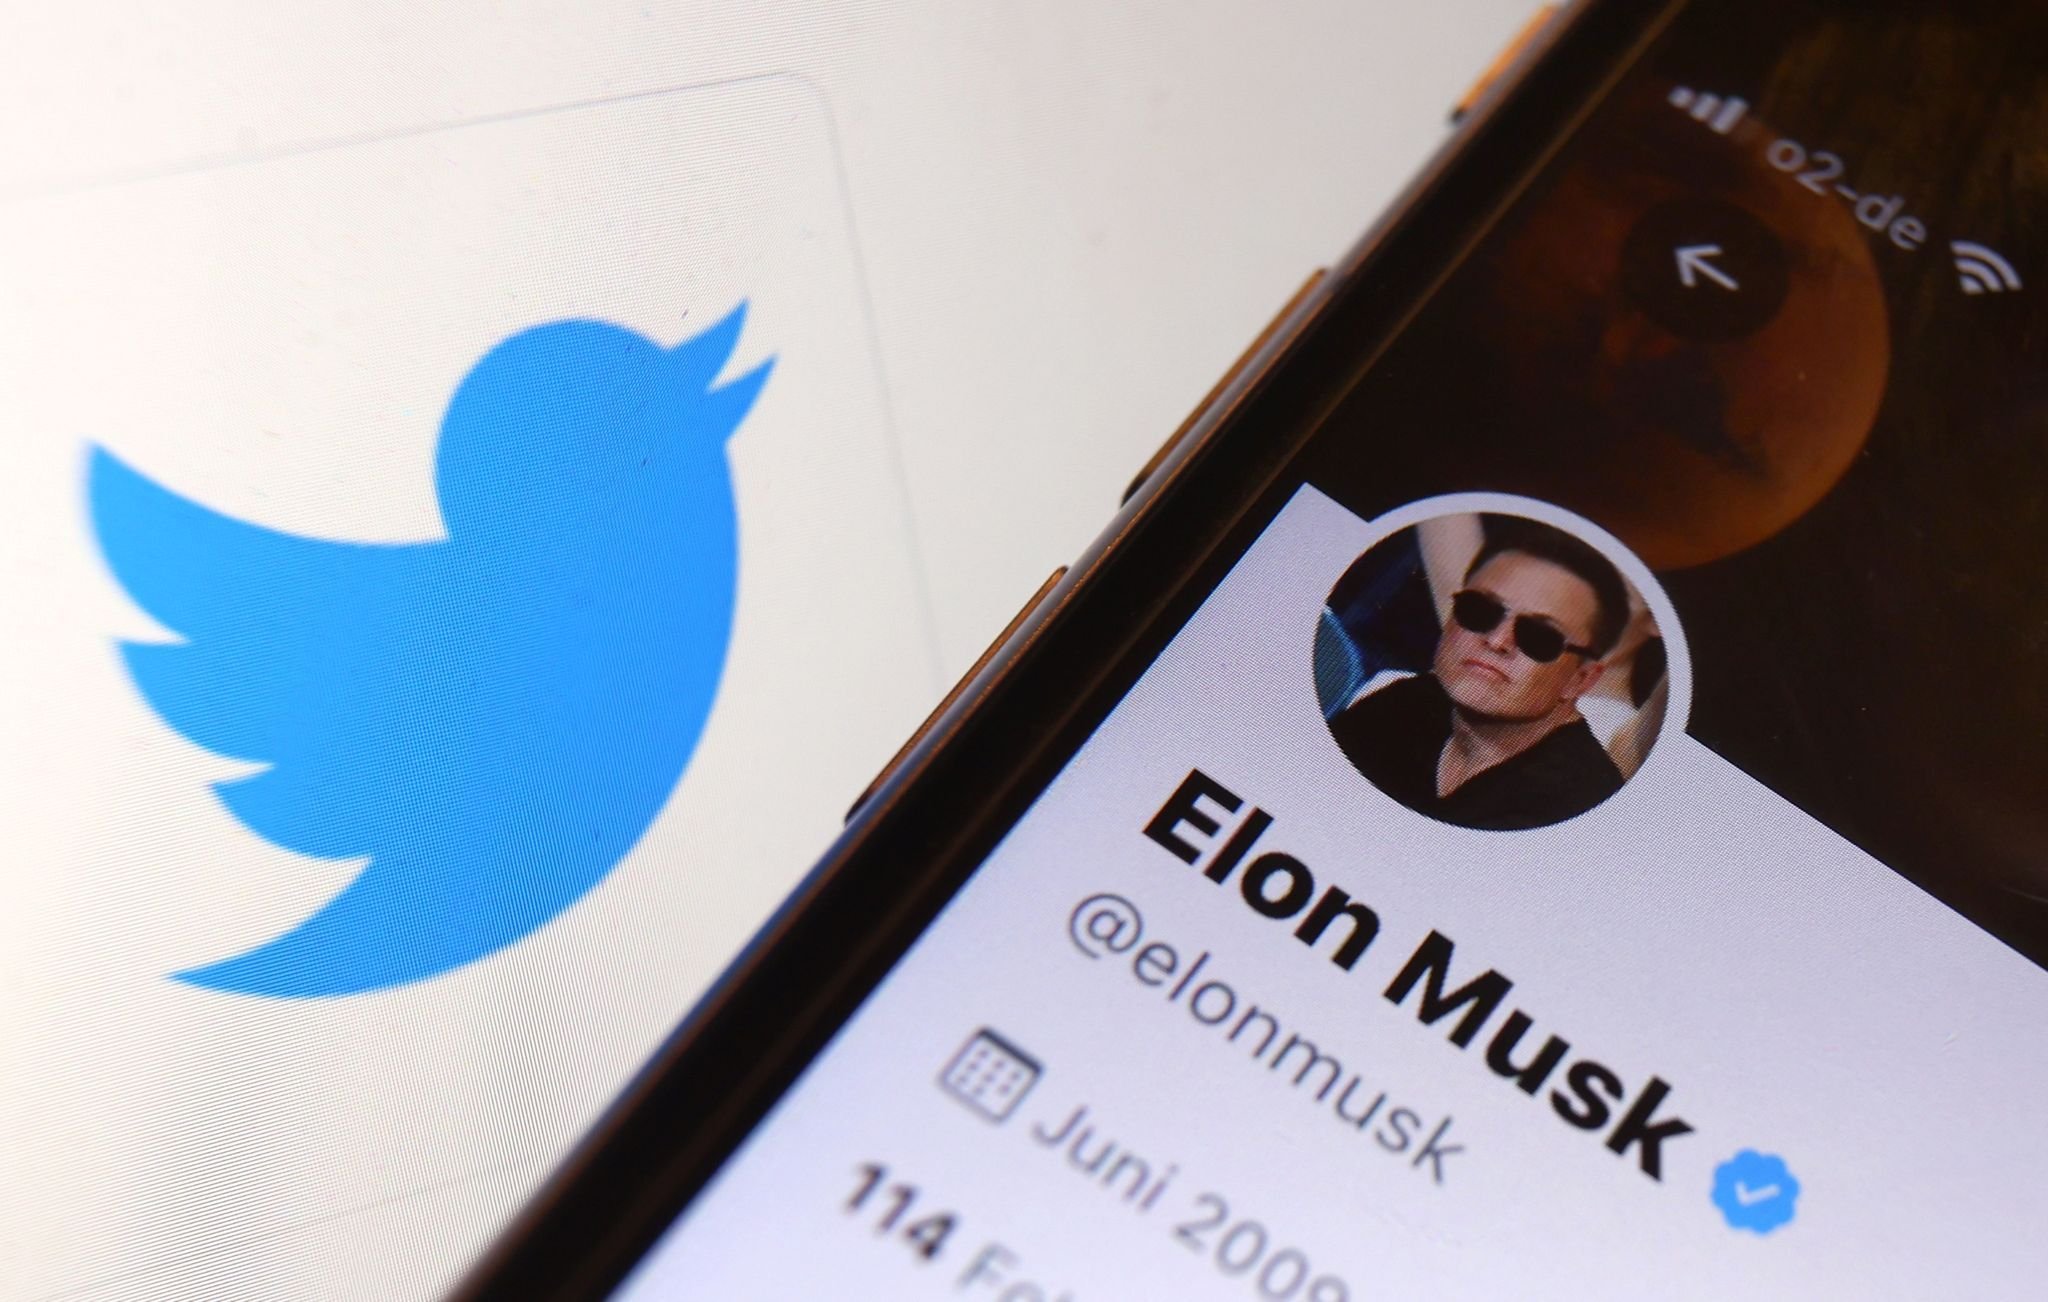 Twitter-Aktie unter Druck: Musks Twitter-Deal ist ernsthaft in Gefahr